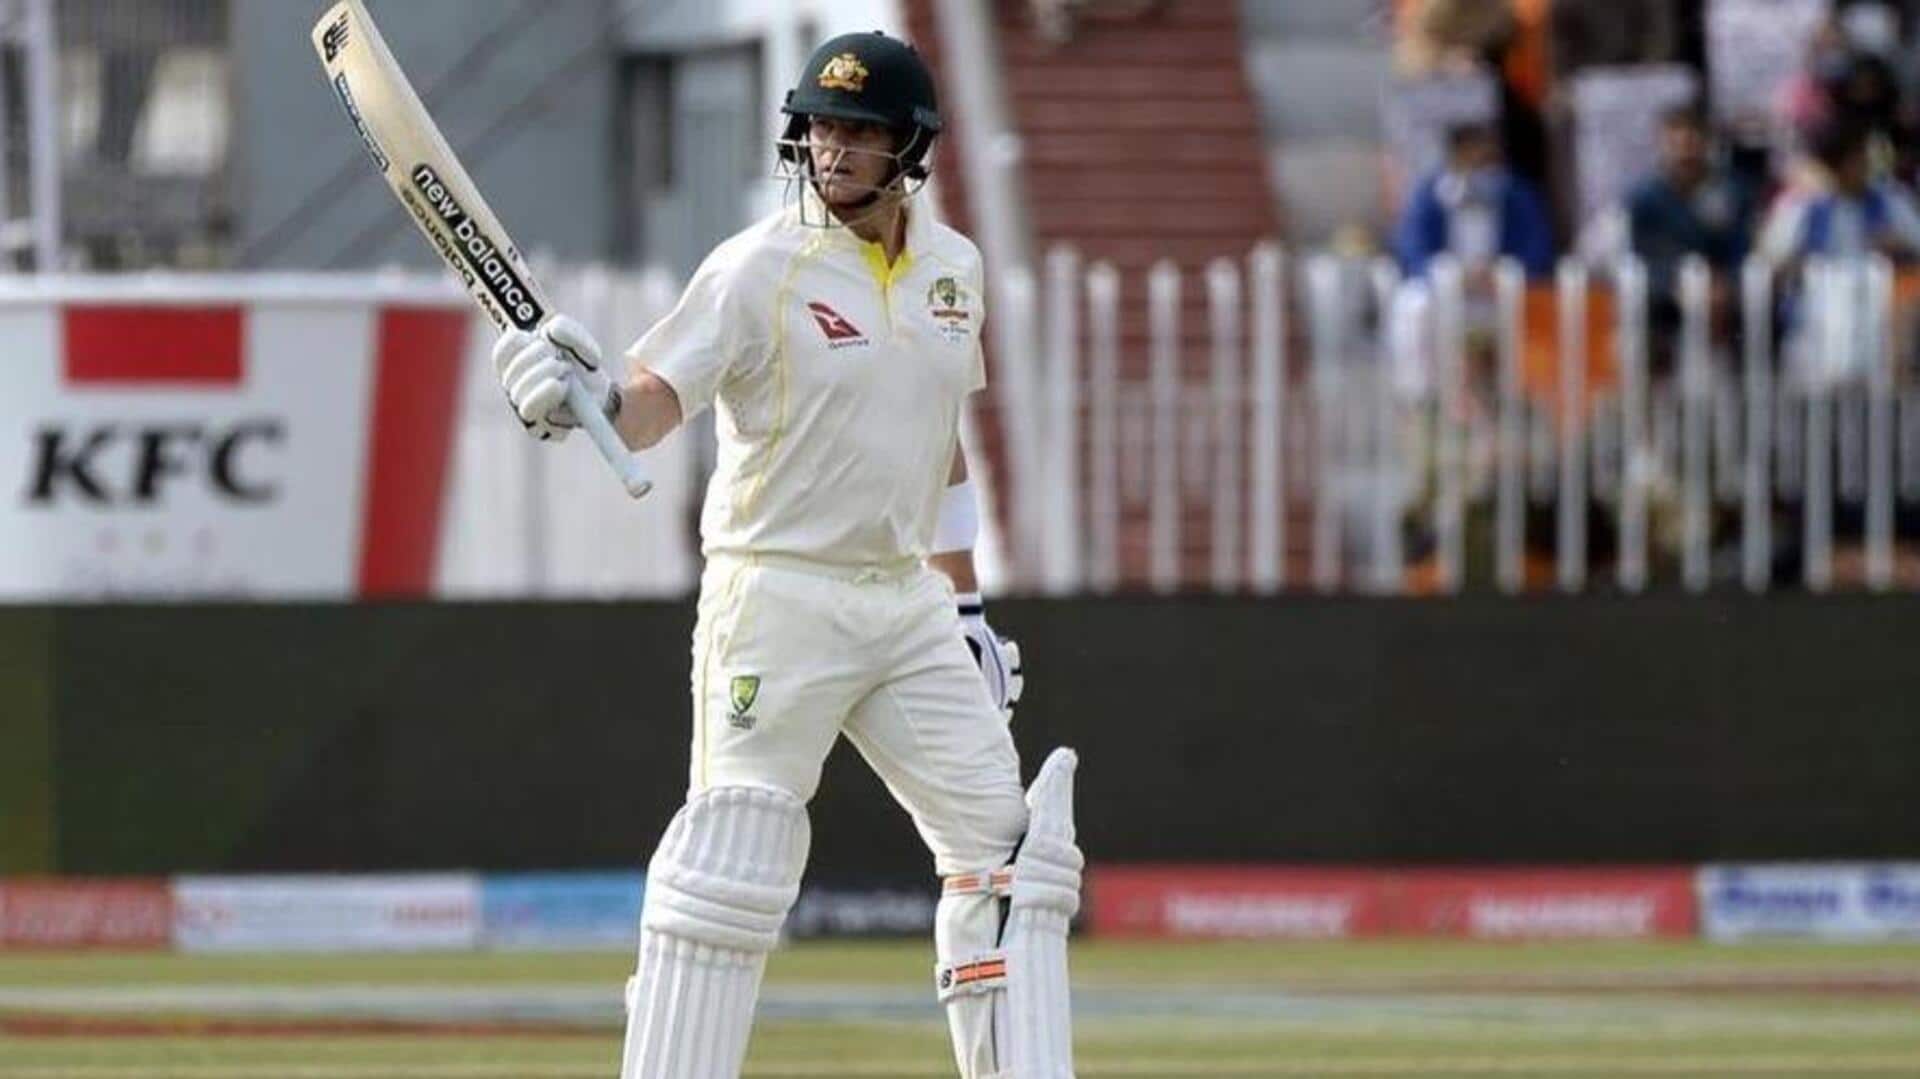 WTC फाइनल: भारत के खिलाफ दूसरे सर्वाधिक रन बनाने वाले बल्लेबाज बन सकते हैं स्मिथ